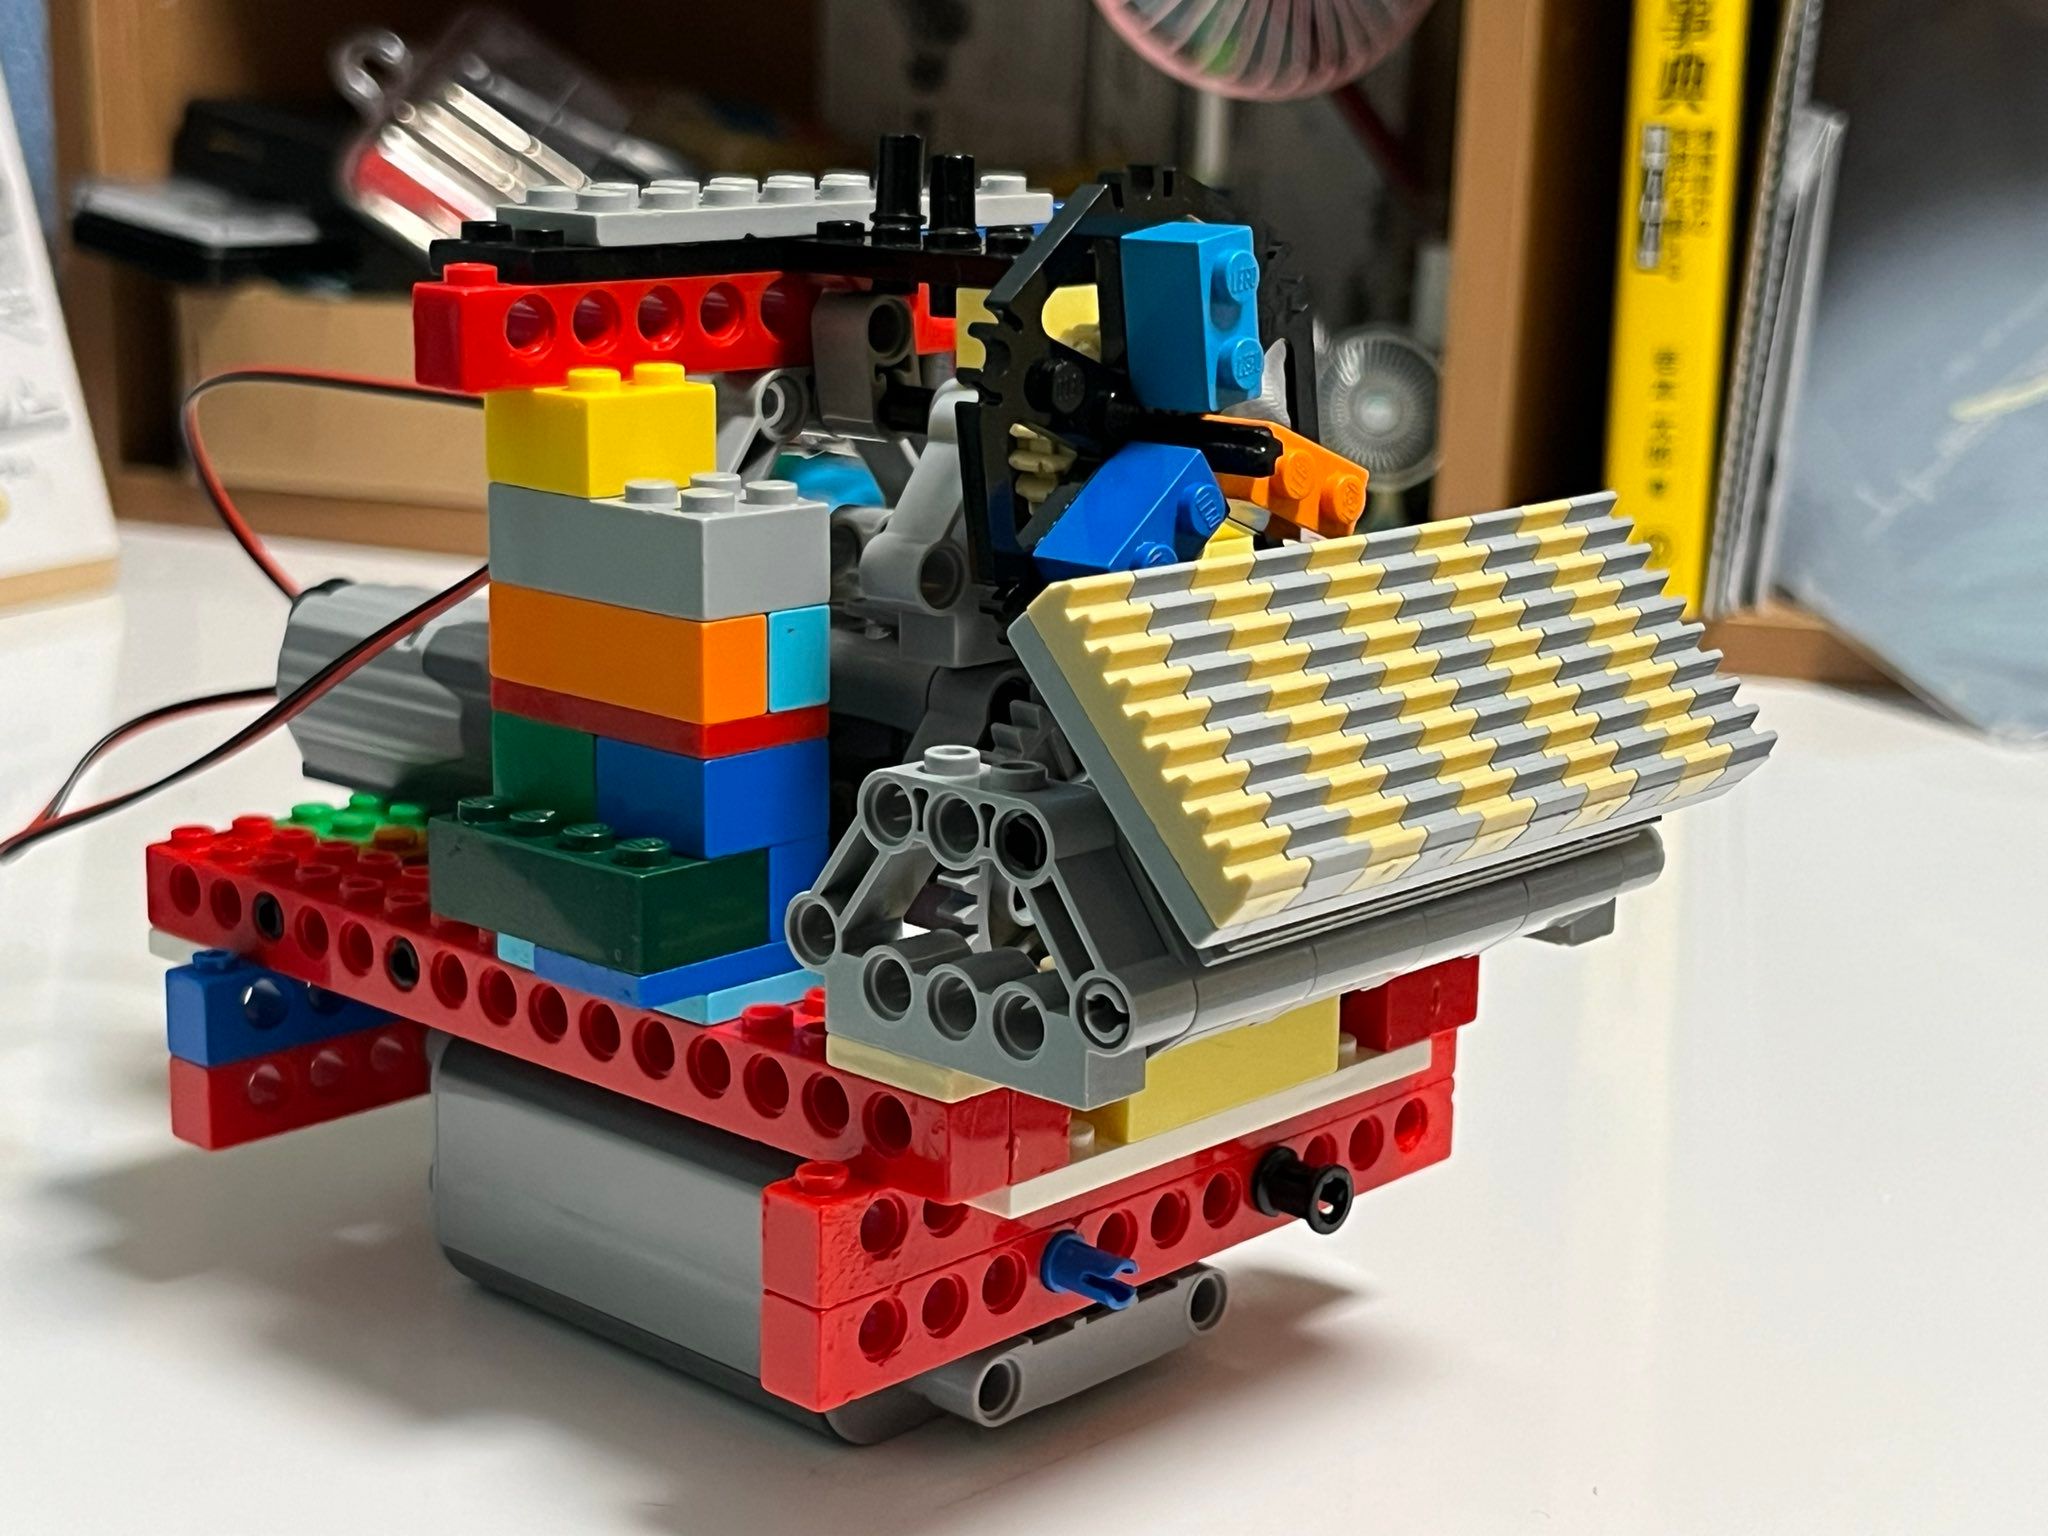 6歳児がブロックで作った“エンジン”！？そのクオリティに、親「いつも驚かされています」　作品づくりのきっかけについて聞いた